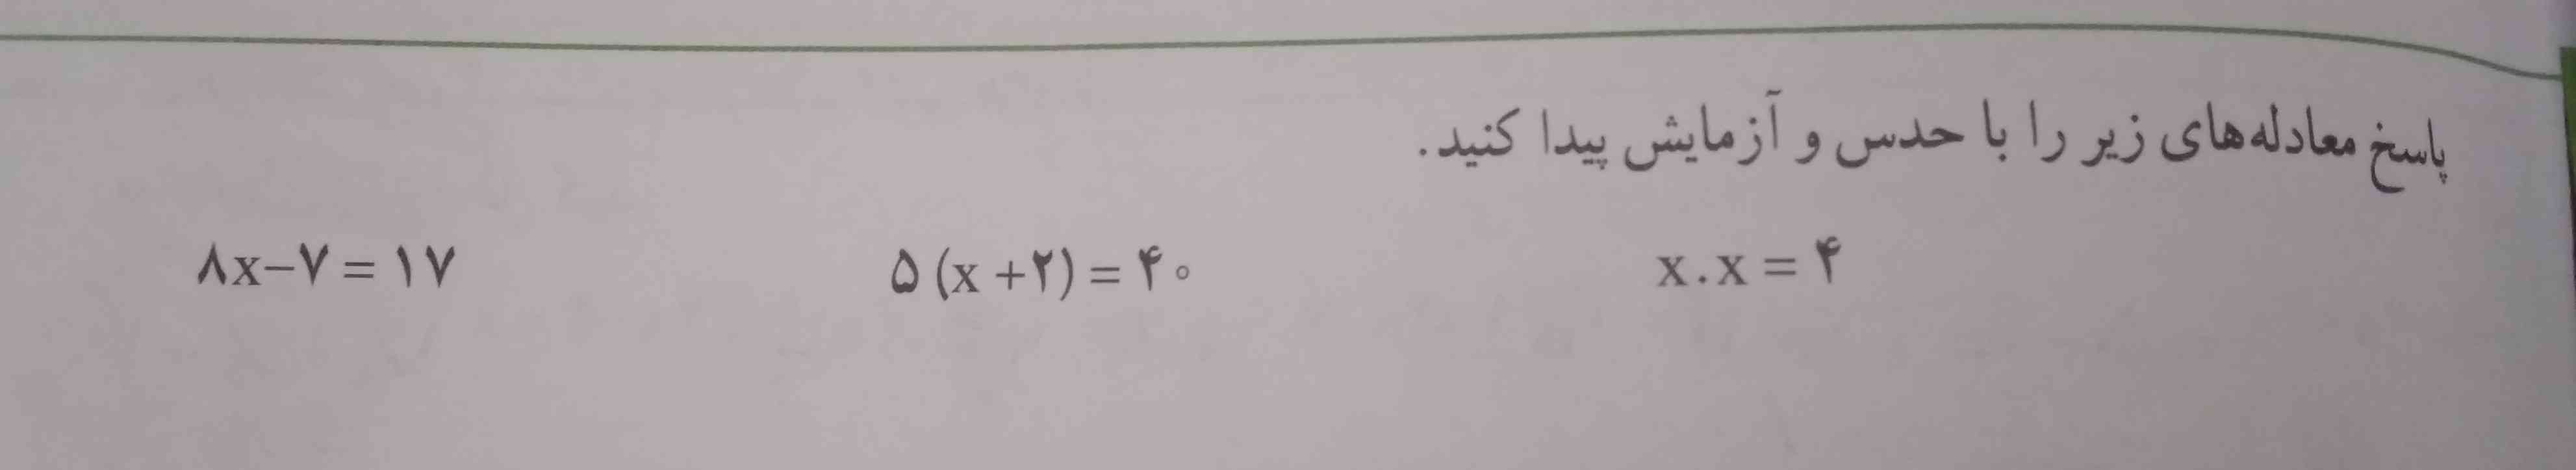 پاسخ معادله را با حدس و آزمایش پیدا کنید.